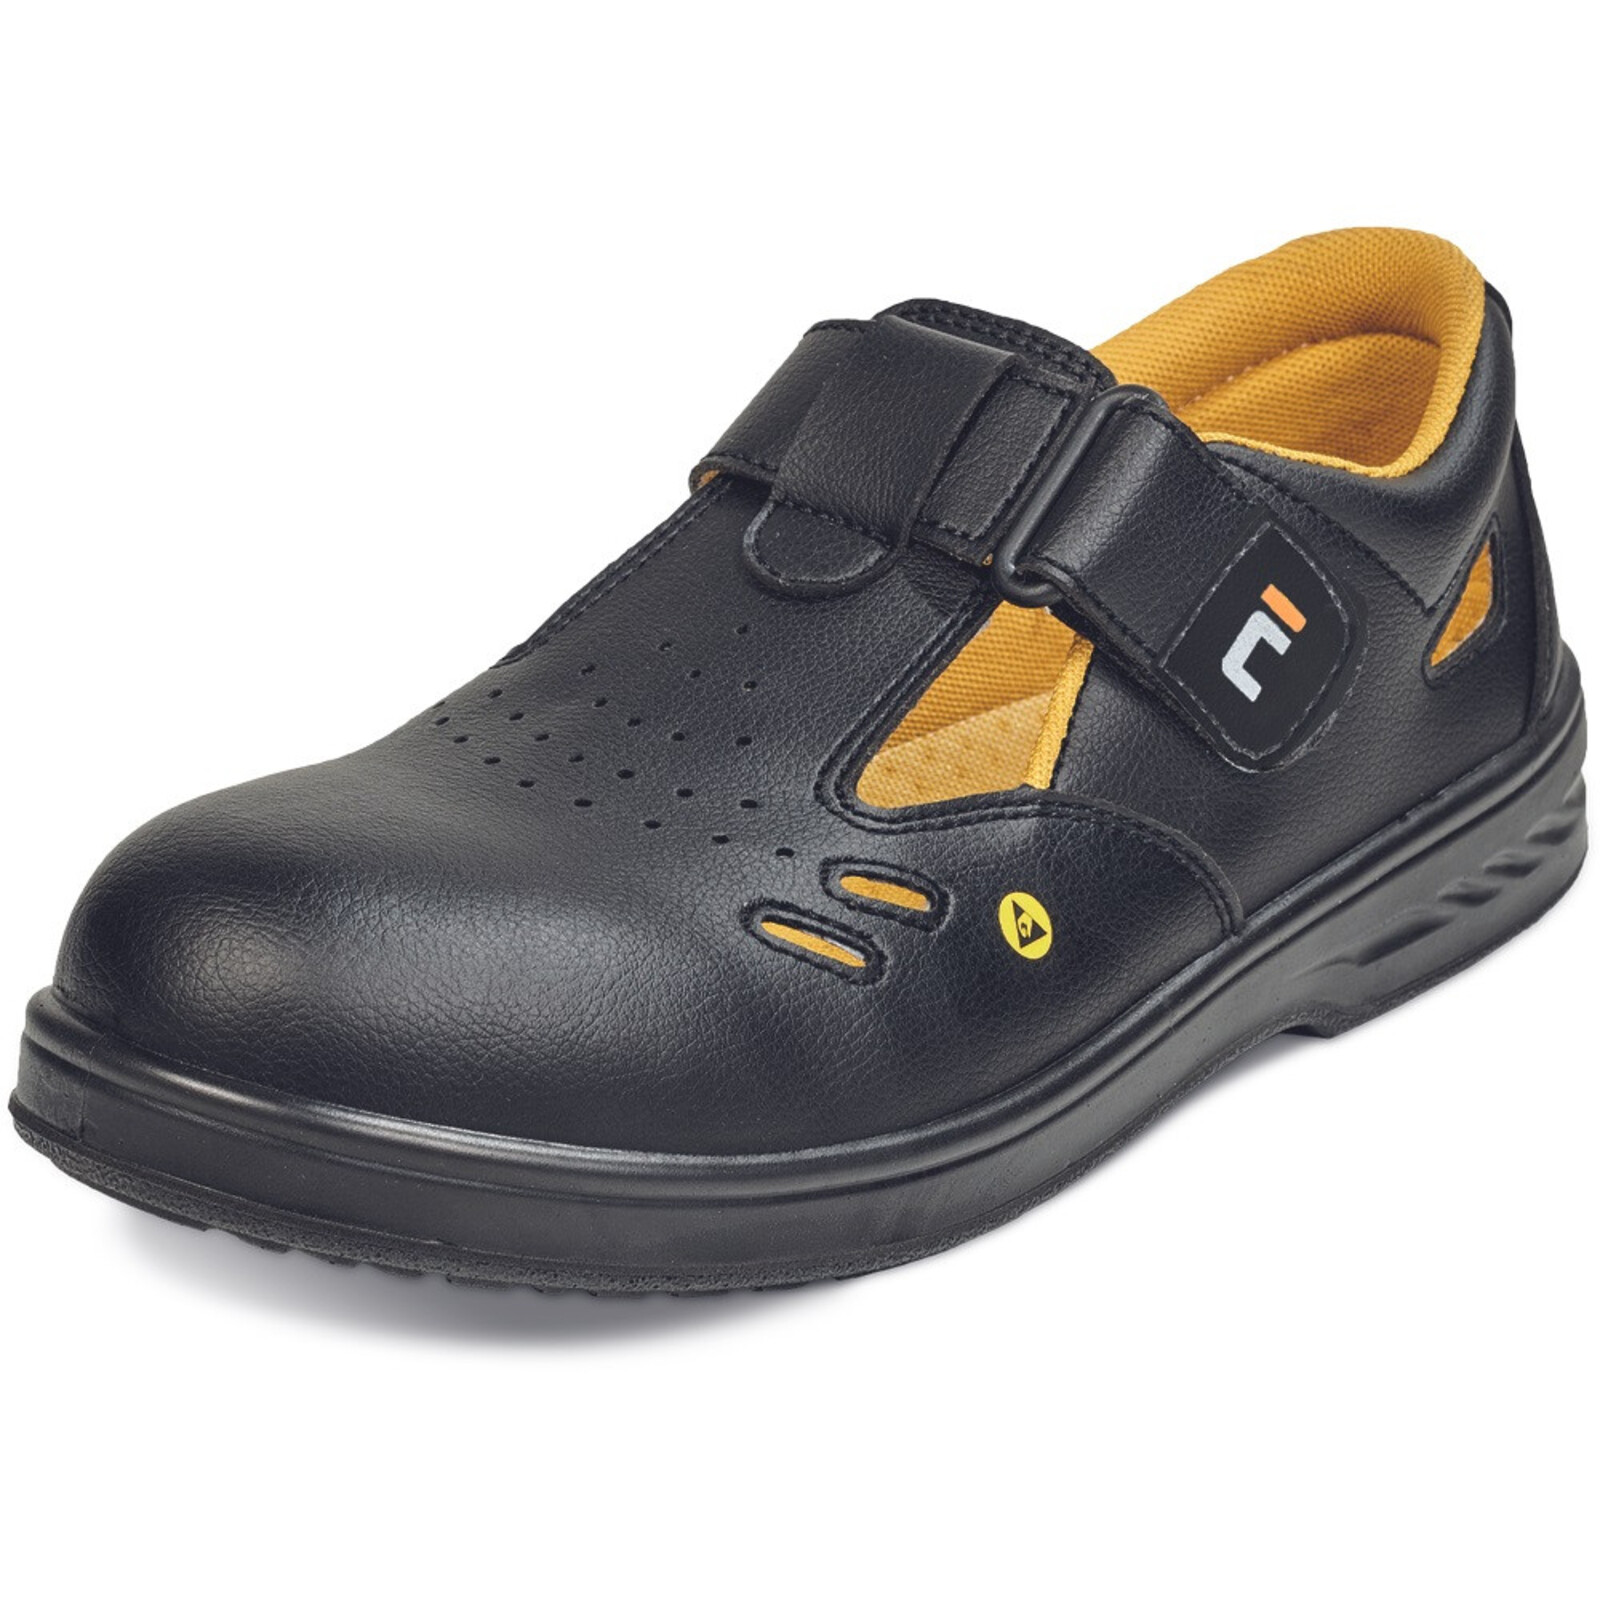 Bezpečnostné sandále Raven MF ESD S1 SRC - veľkosť: 42, farba: čierna